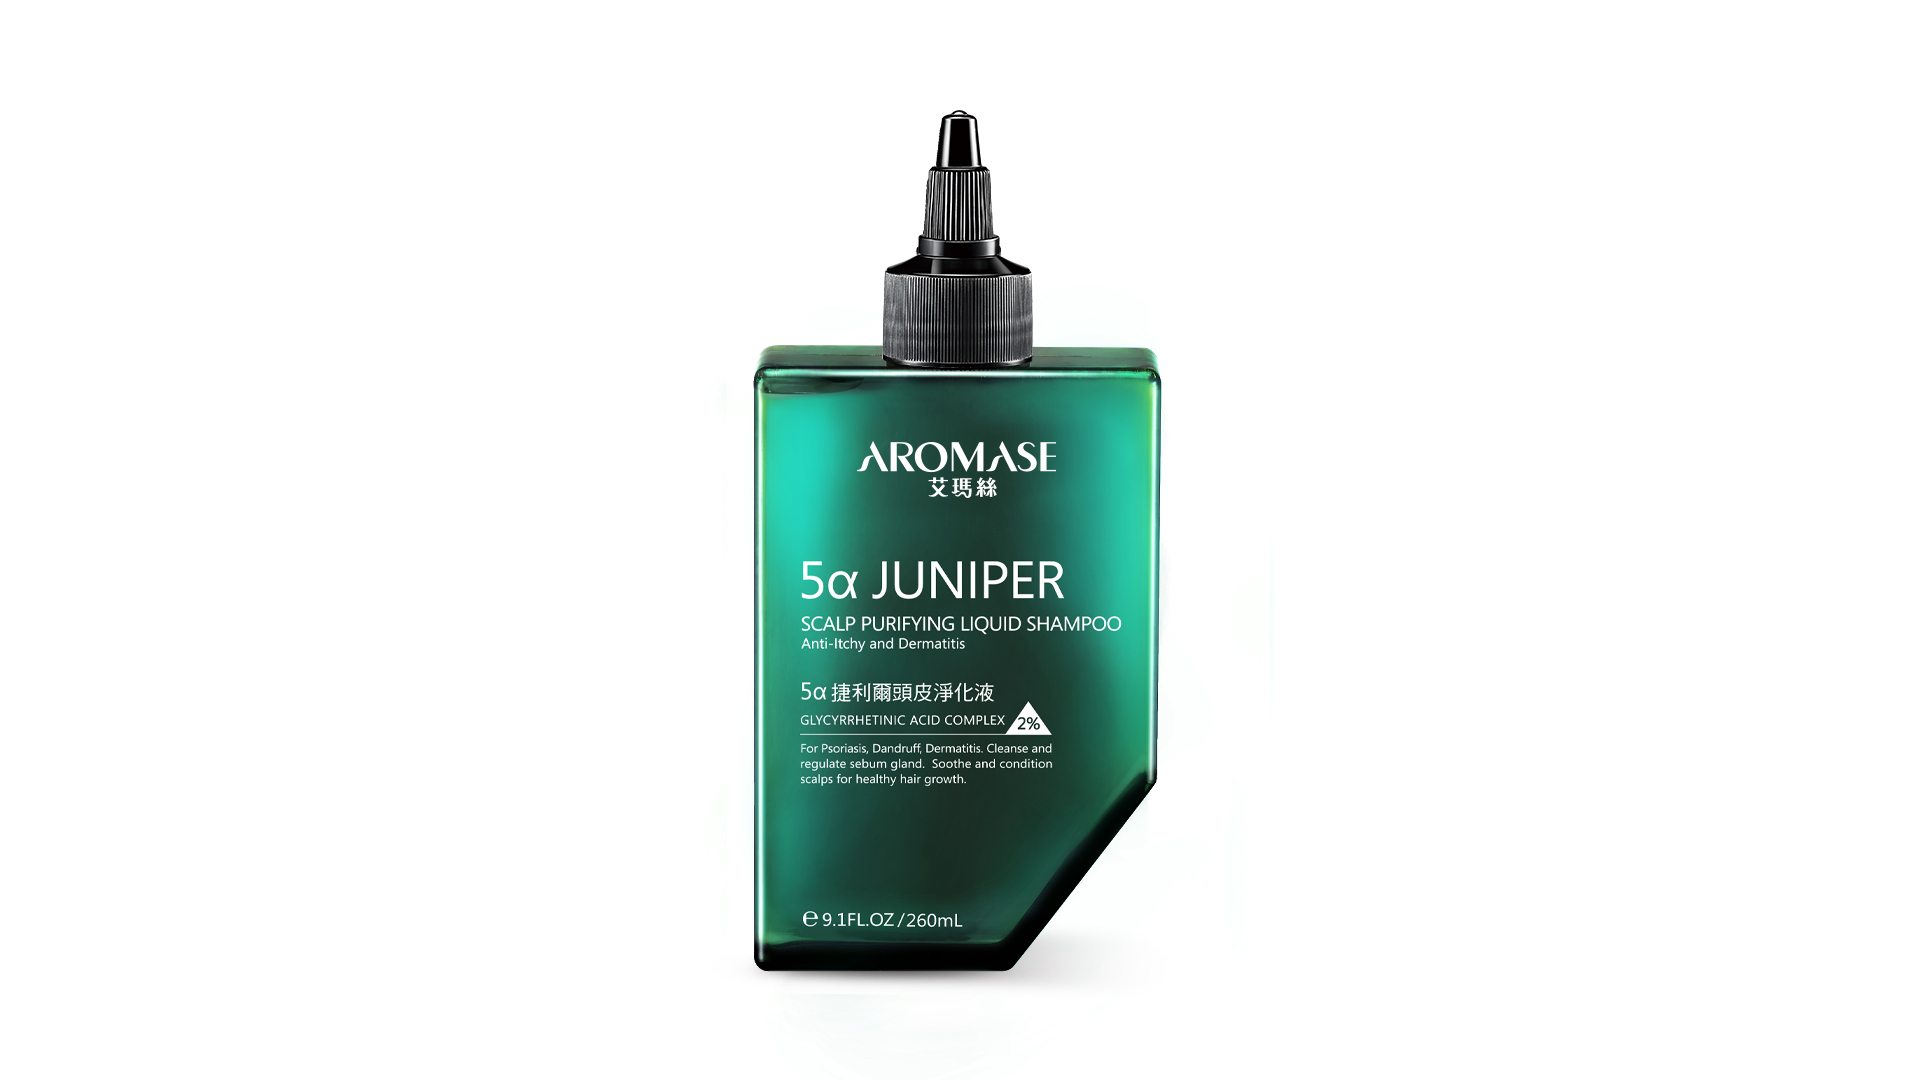 5α Juniper Scalp Purifying Liquid Shampoo / MacroHI co., Ltd.